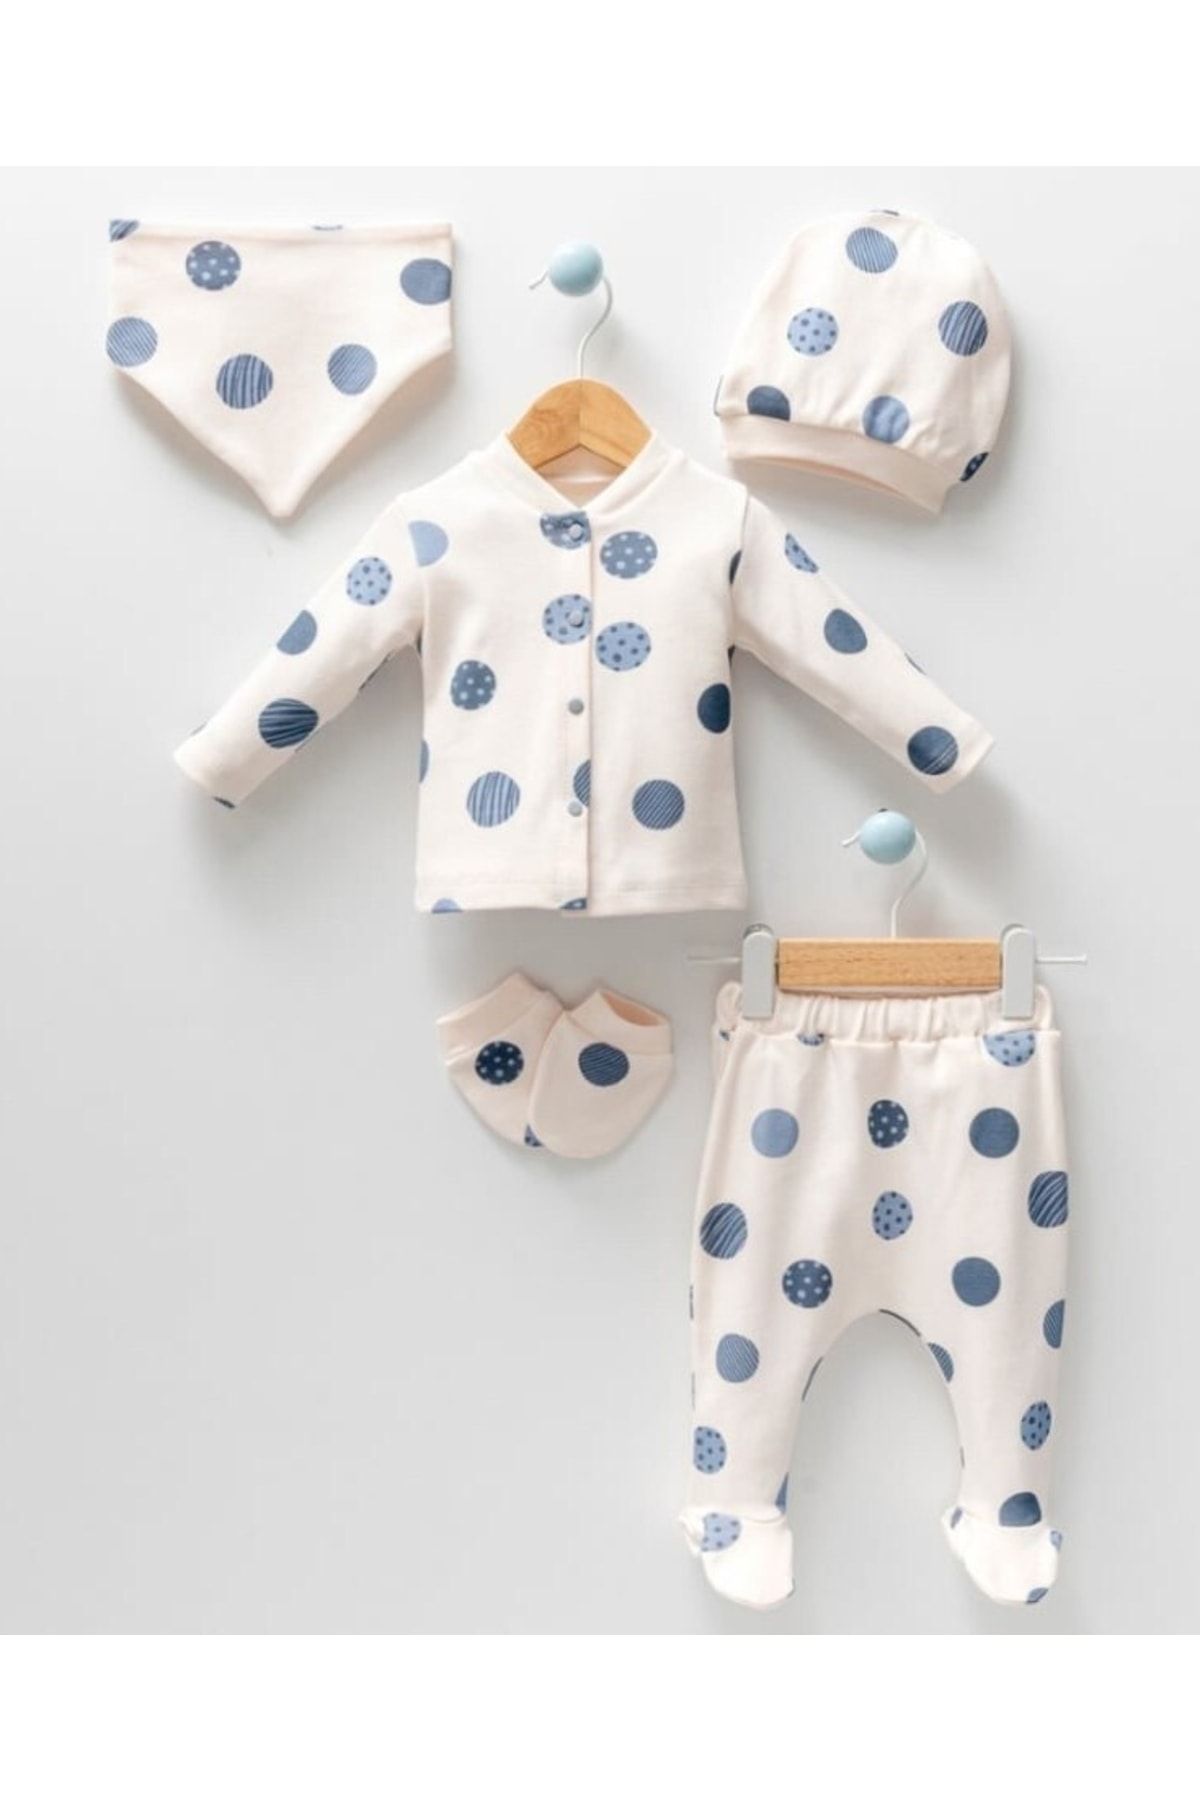 VERONA TARZ Yeni Sezon Kız Erkek Bebek Unisex Desenli Organik Pamuk 5li Hastane Çıkışı Yenidoğan Kıyafeti